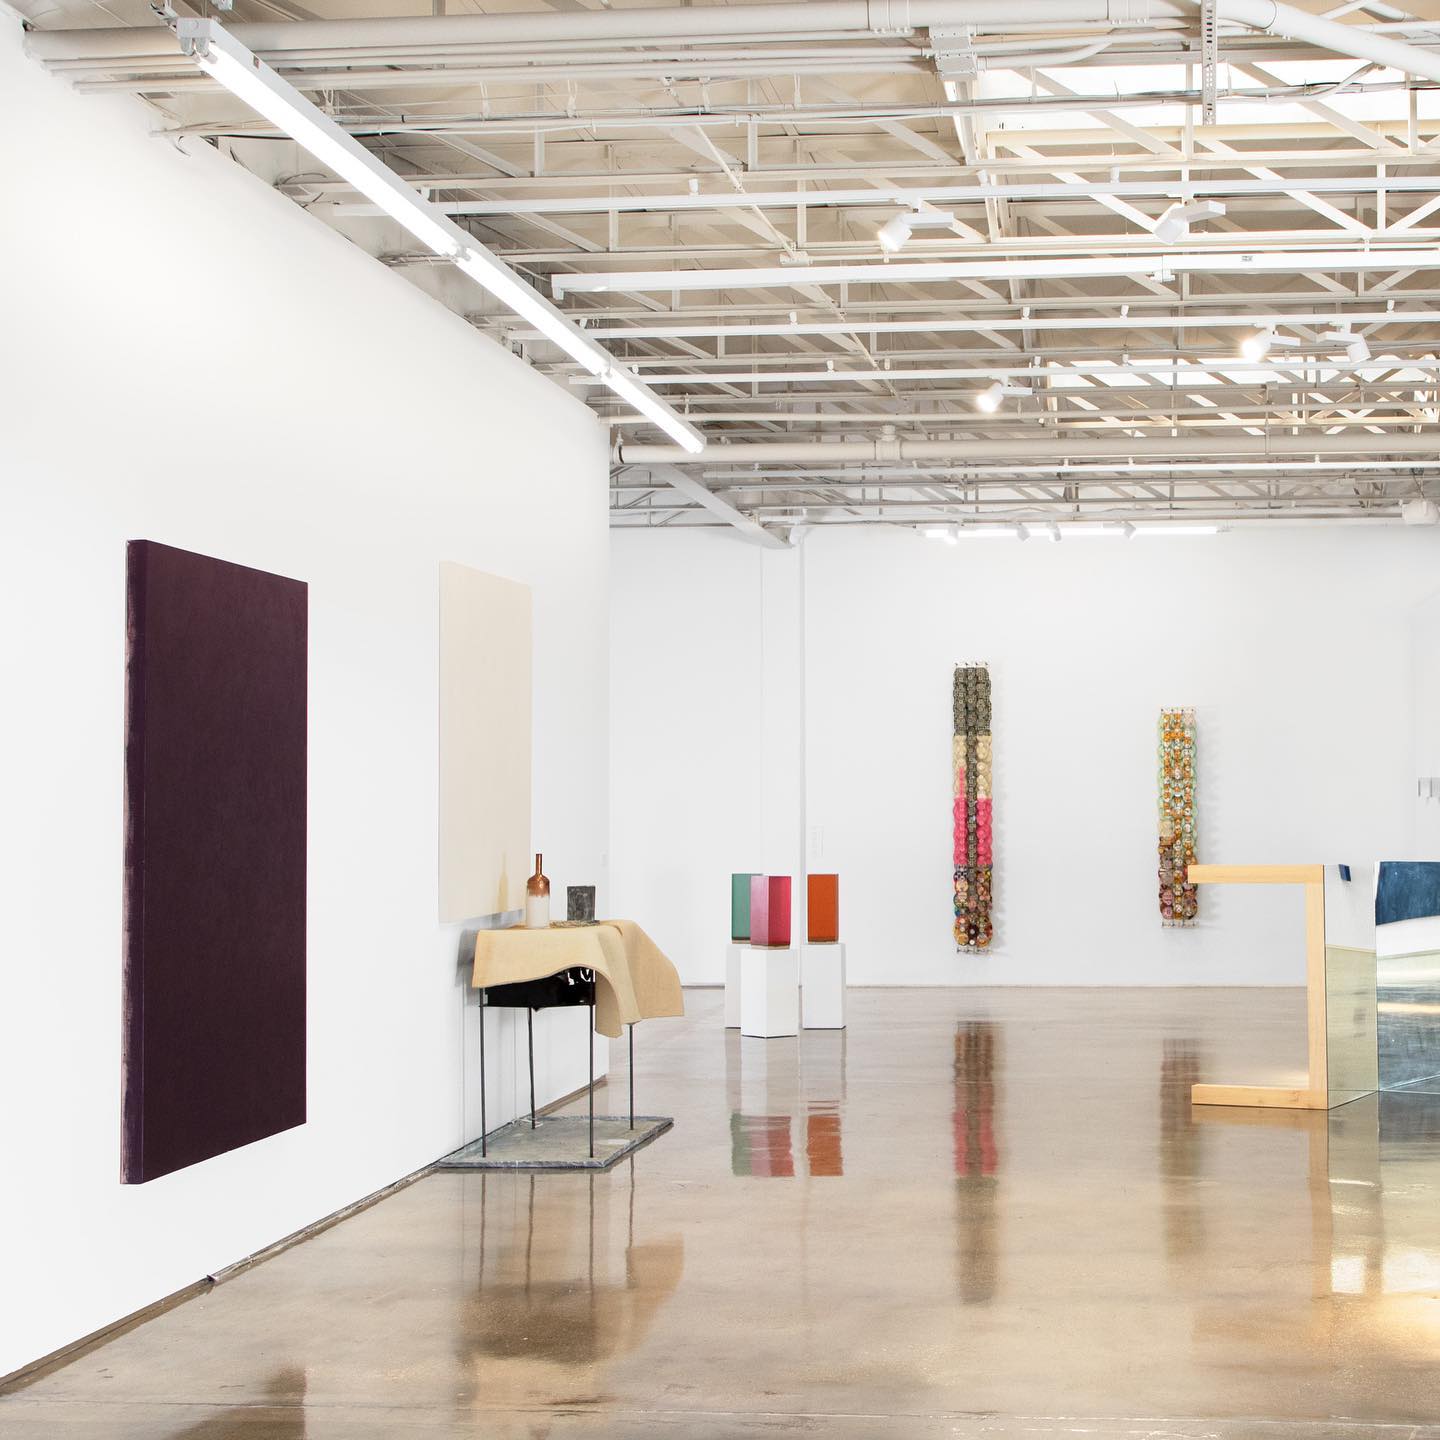 Piero Atchugarry Gallery Miami